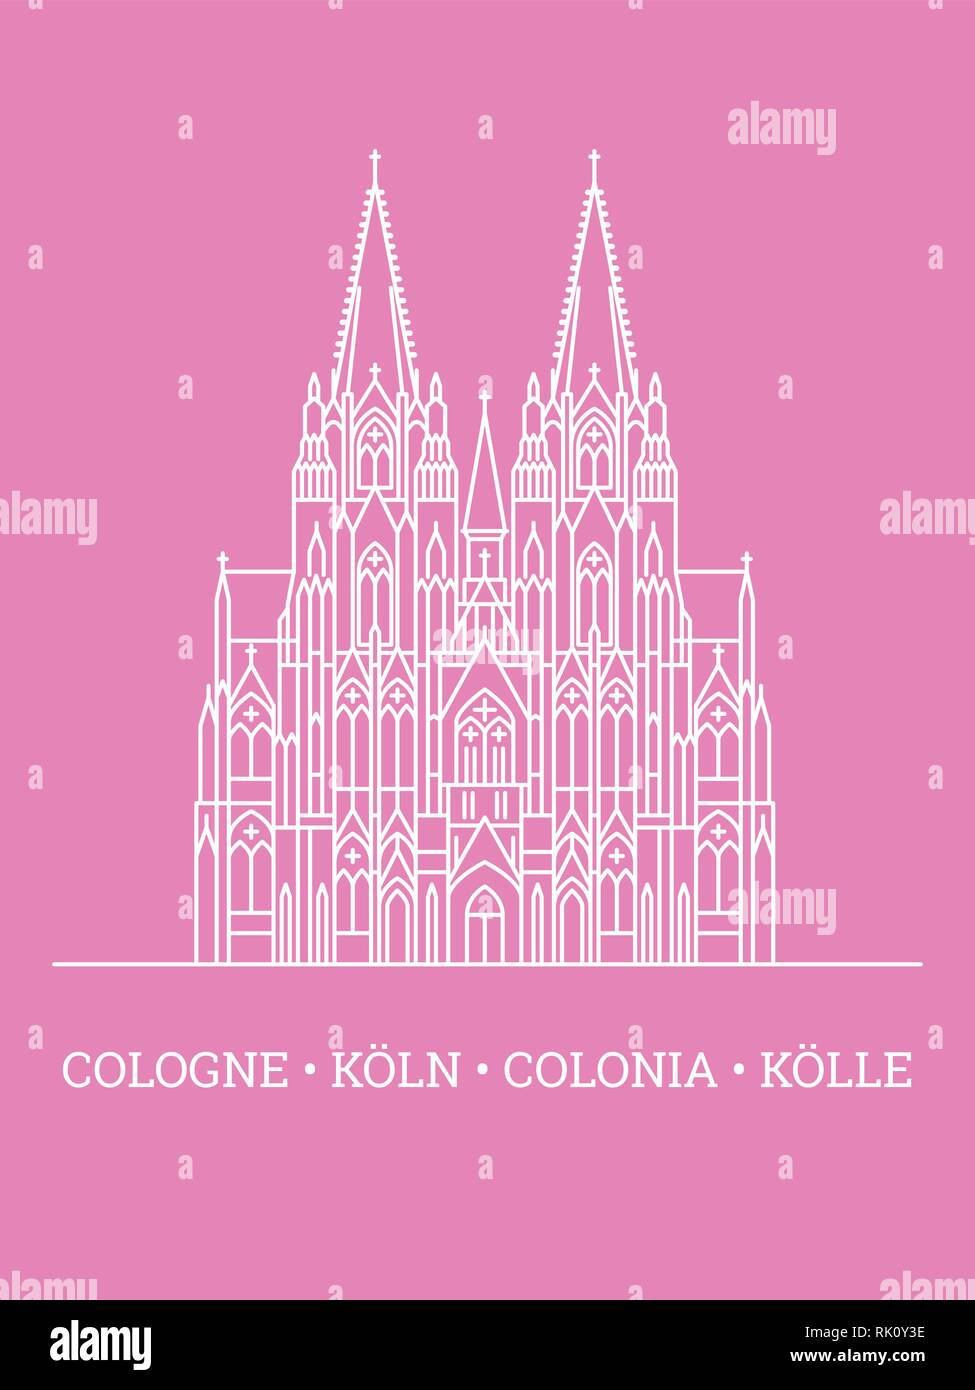 Symbol Leitung stil Vector Illustration des Kölner Doms, Weiß auf rosa Hintergrund, mehrsprachigen Text unten Stock Vektor